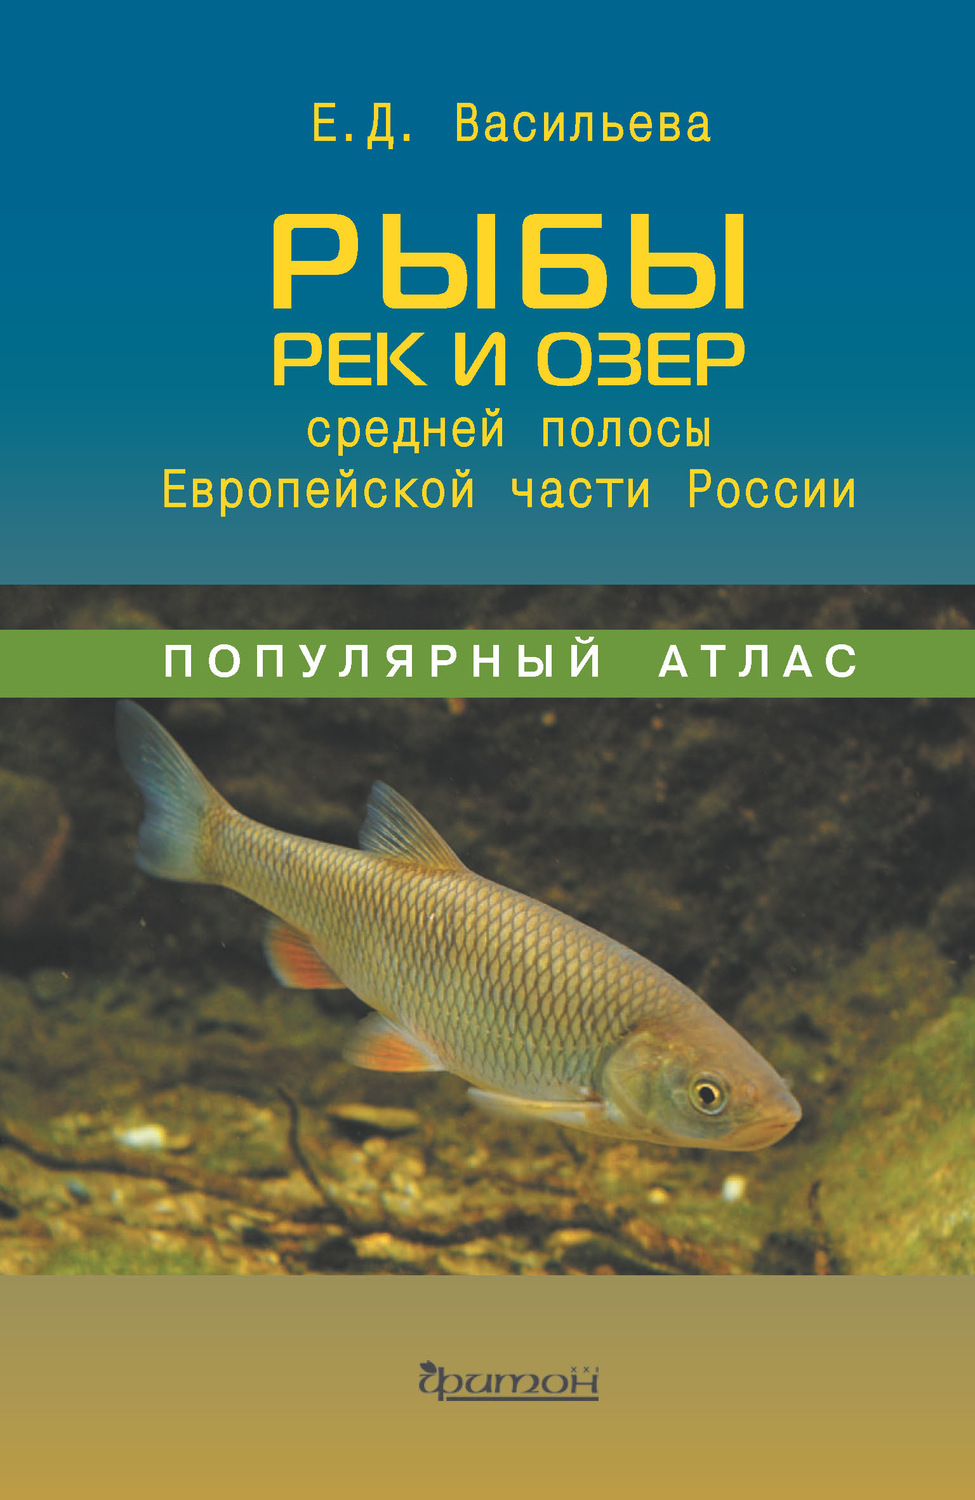 Книги про рыб. Атлас рыб. Рыбы России книга. Рыбы средней полосы.